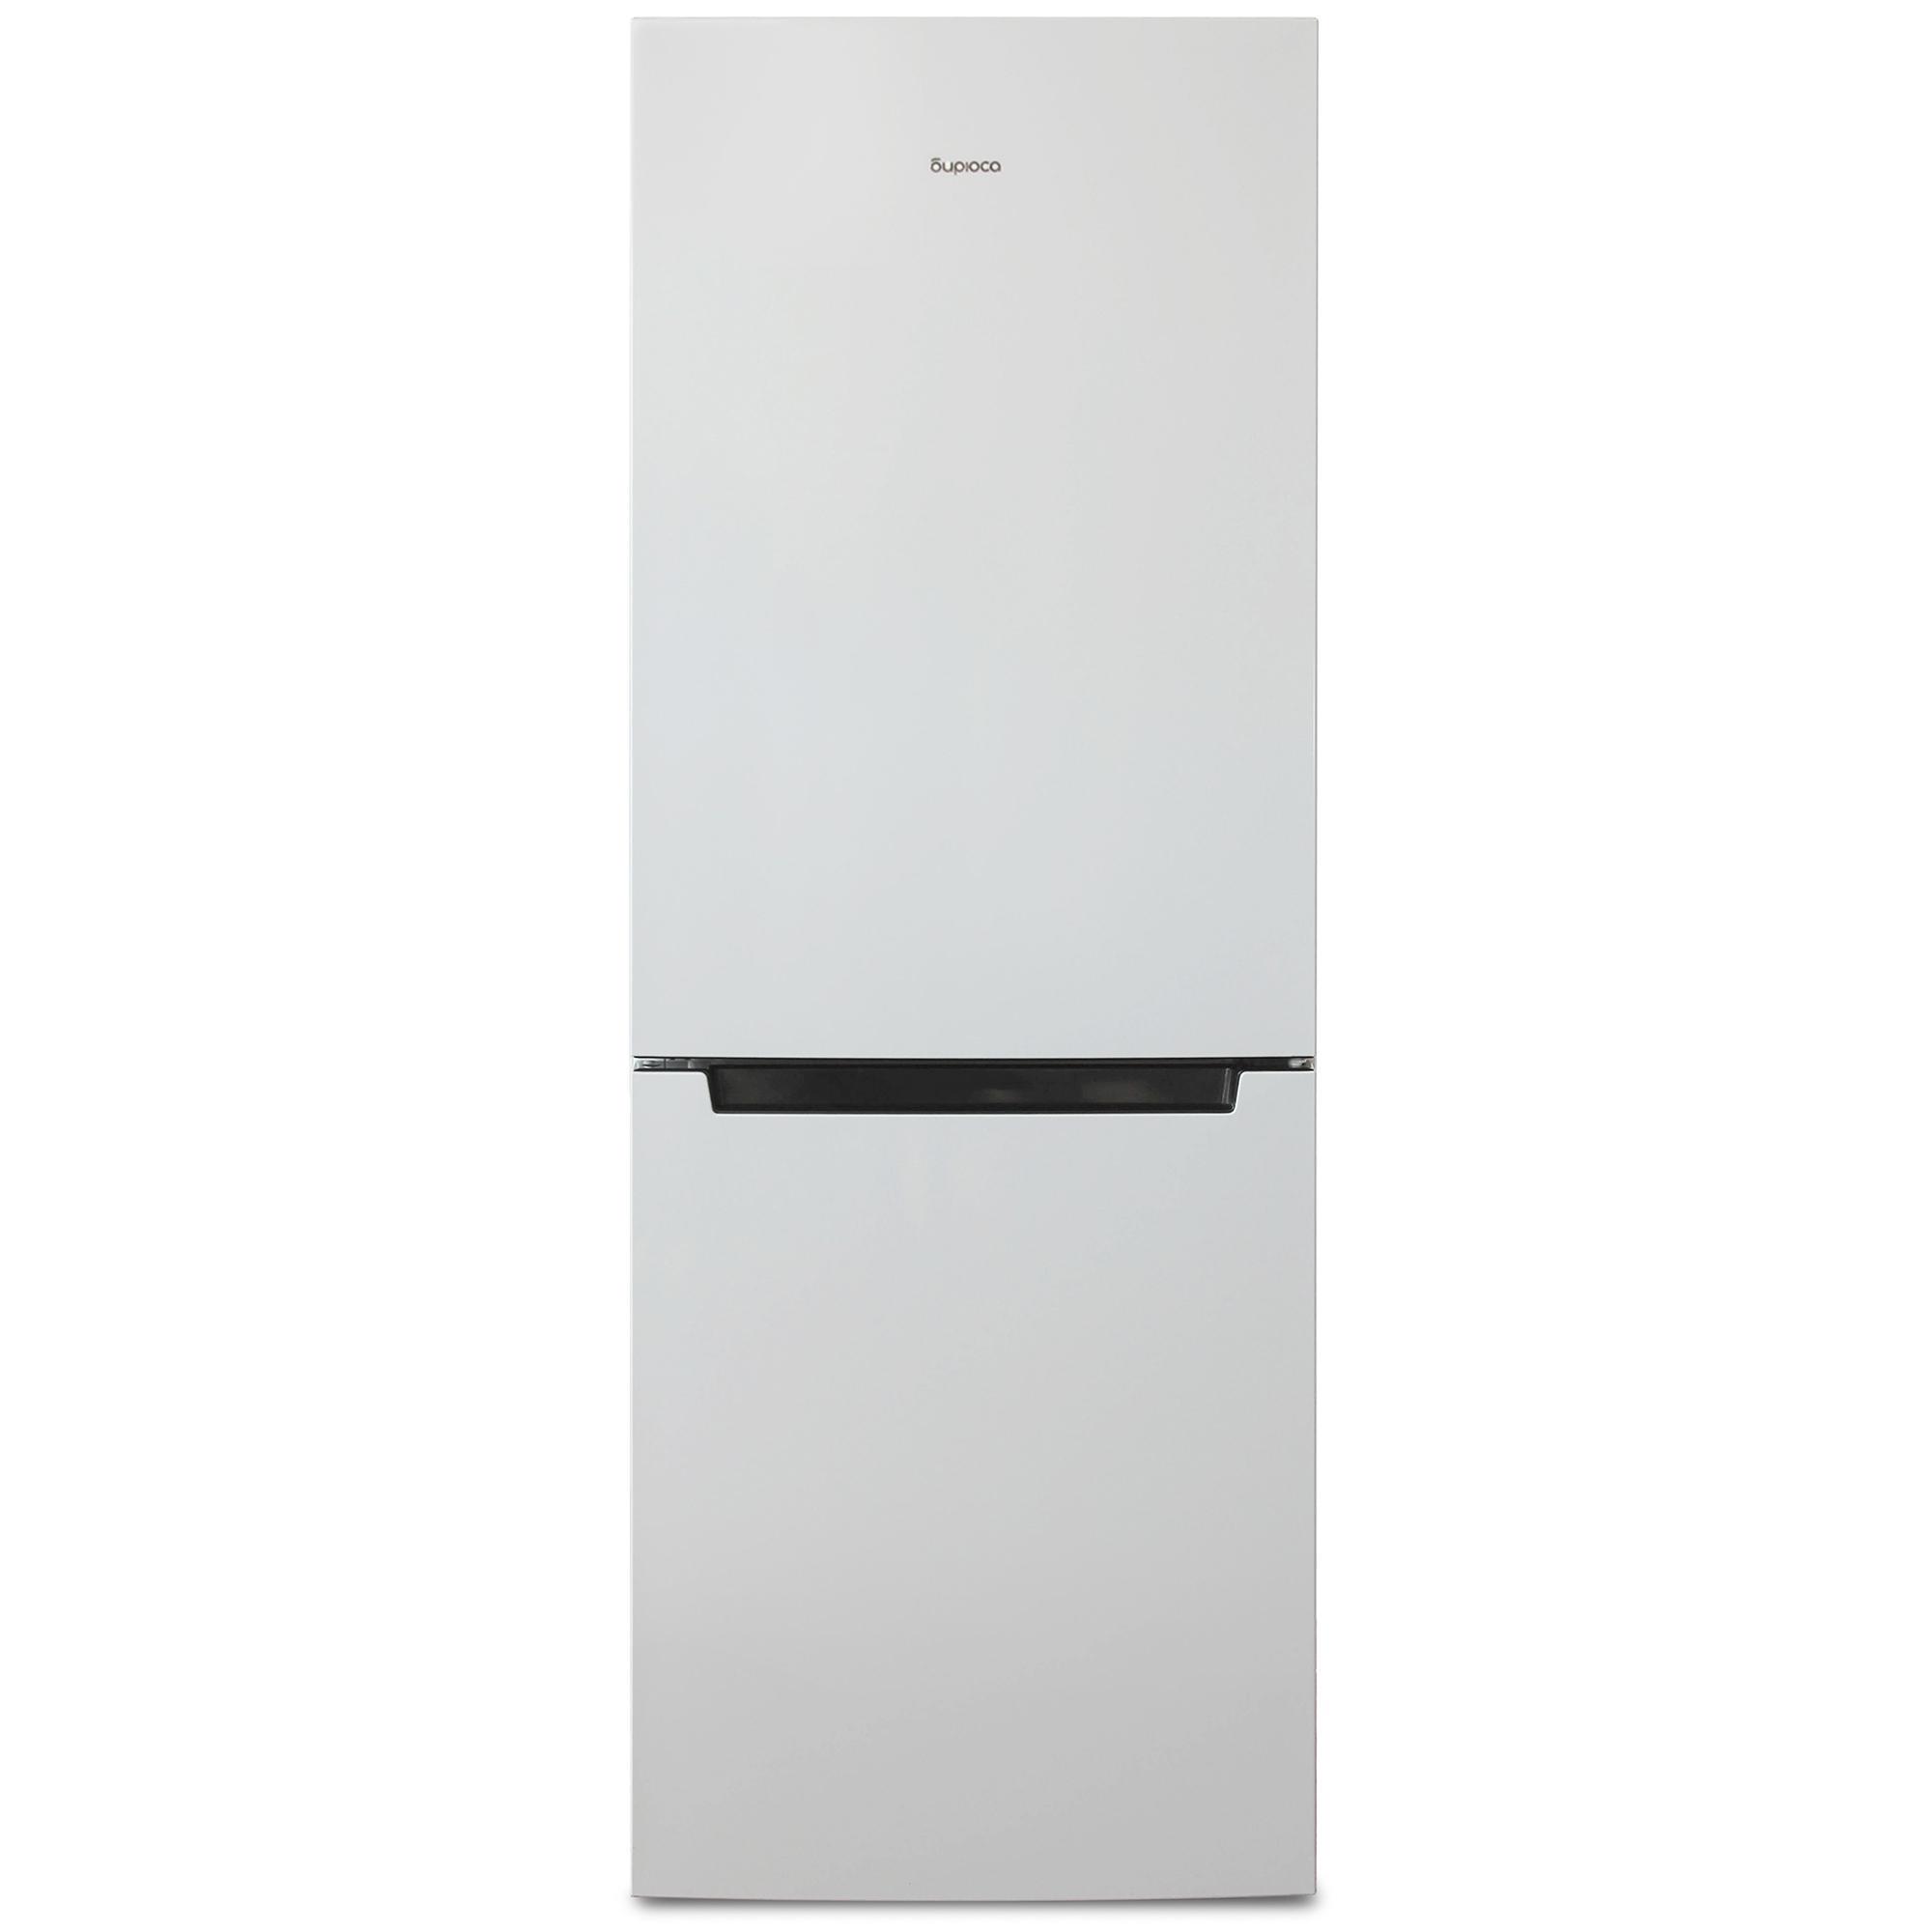 90469214 Отдельностоящий холодильник Б-820NF 60x175 см цвет белый STLM-0239106 БИРЮСА